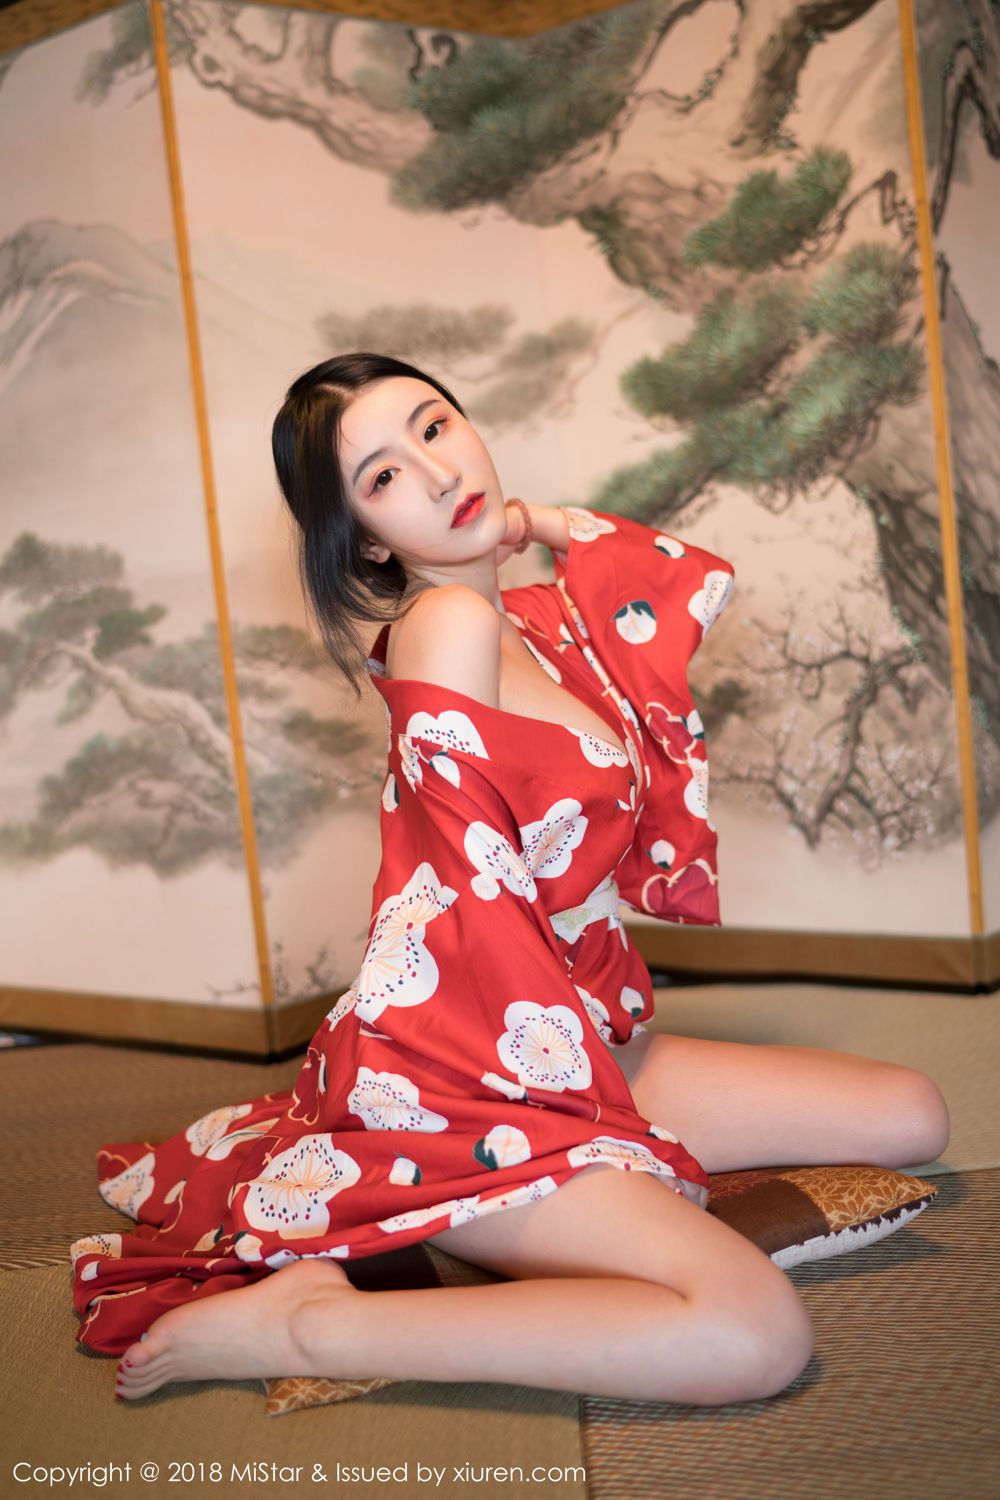 谢芷馨北海道旅拍 红色和服妩媚娇艳